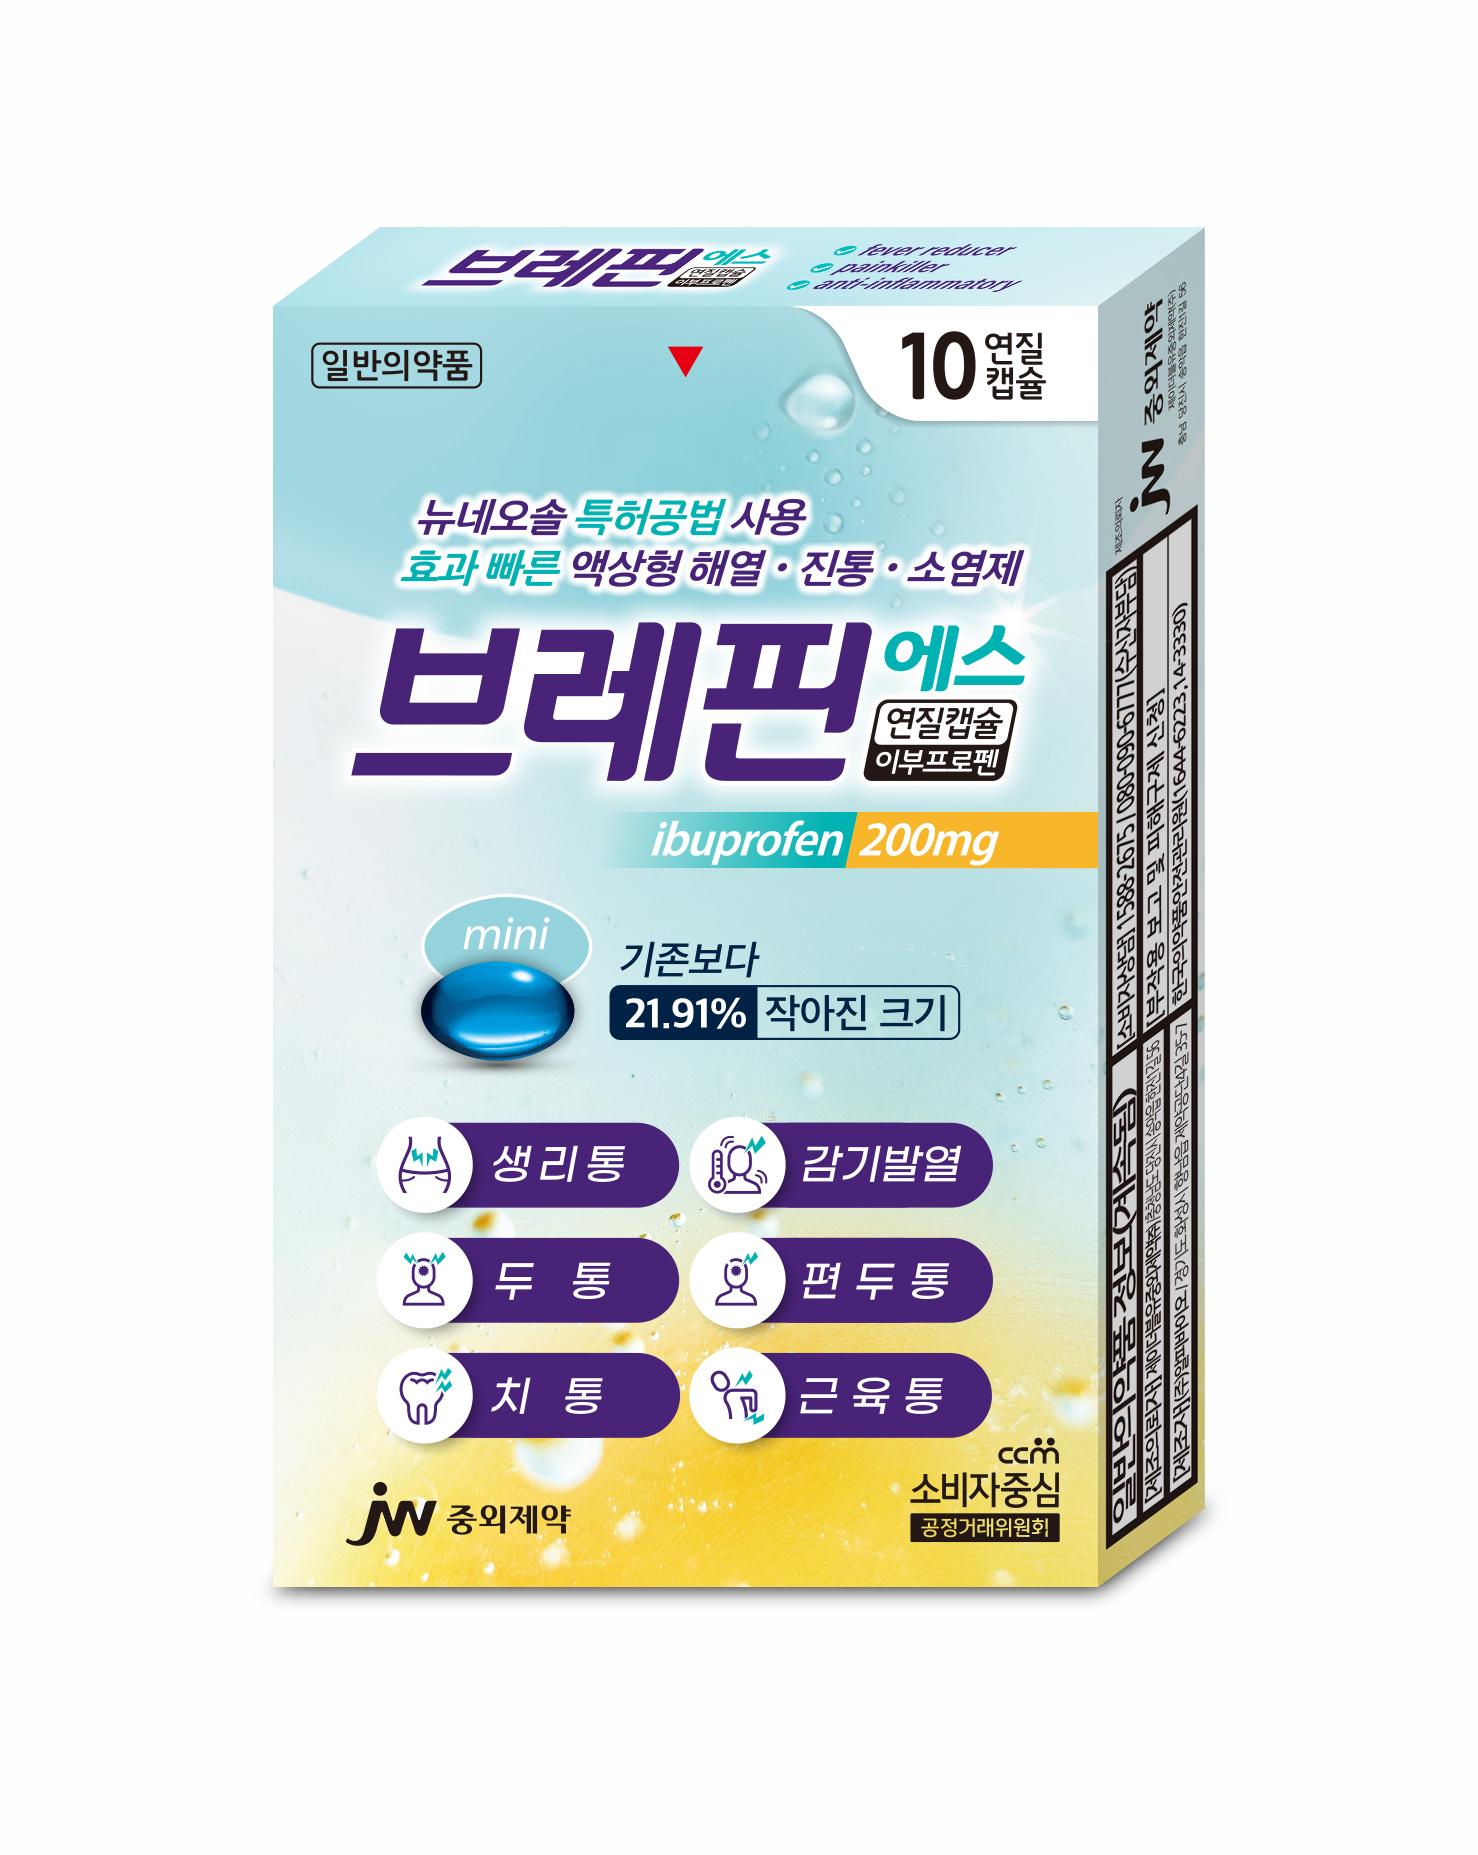 JW중외제약, 액상형 연질캡슐 진통제 '브레핀에스' 리뉴얼 제품 출시